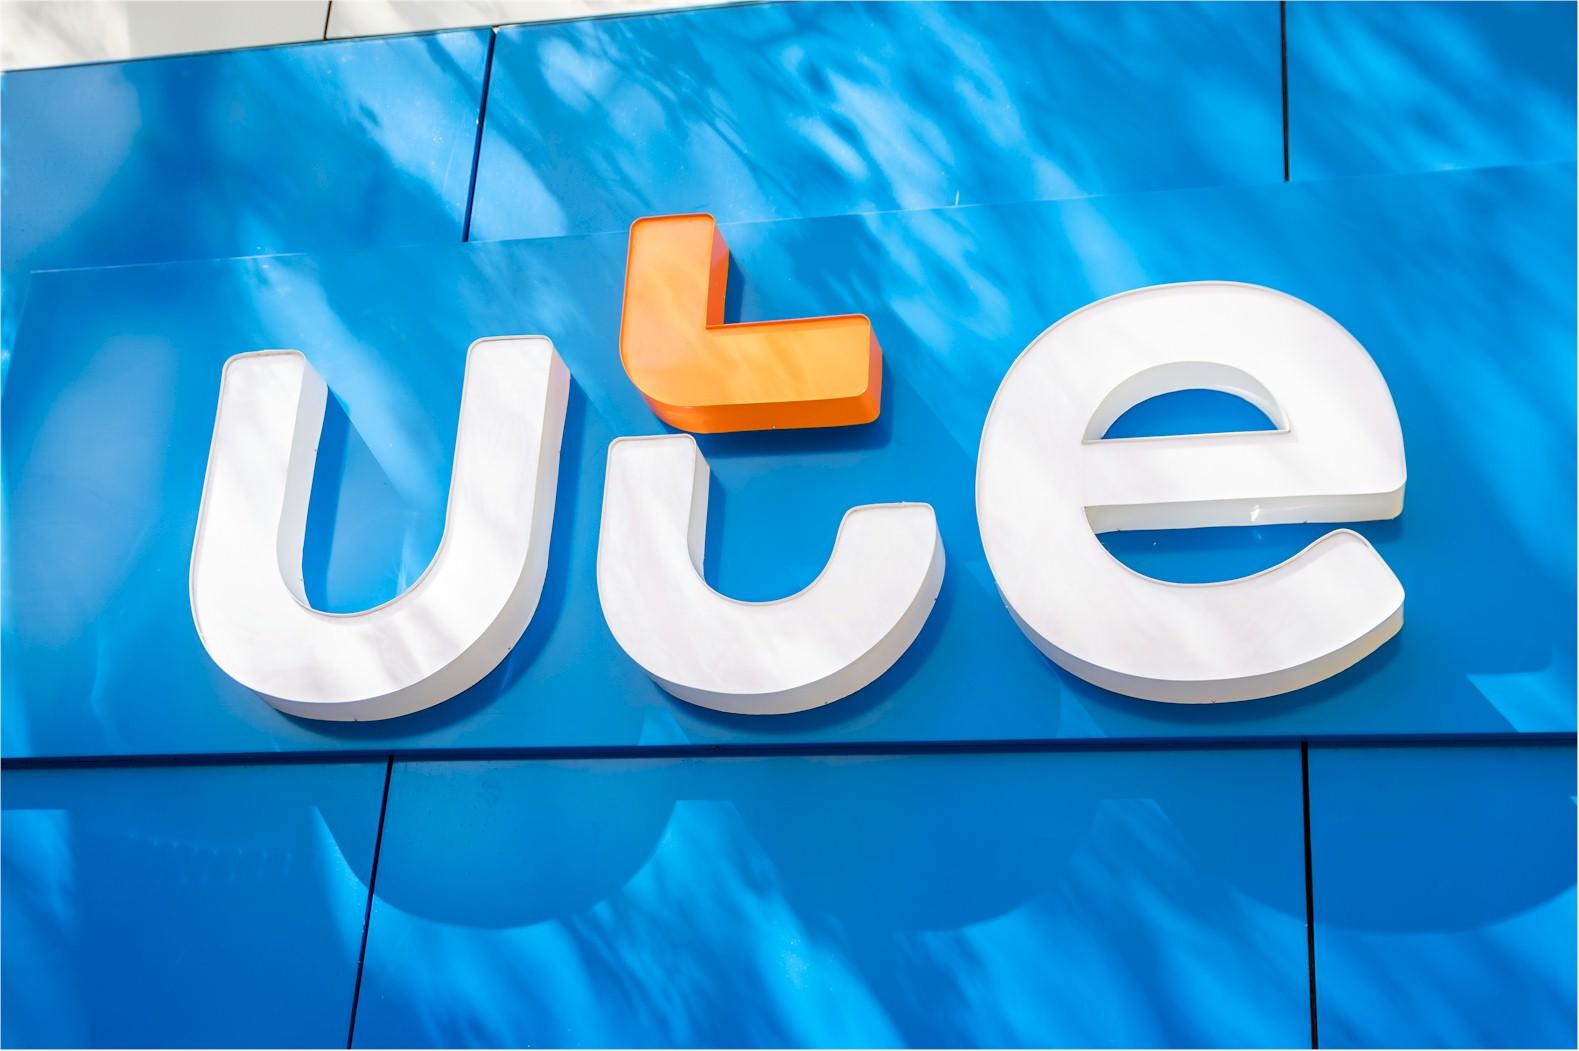 El nuevo logotipo institucional de UTE